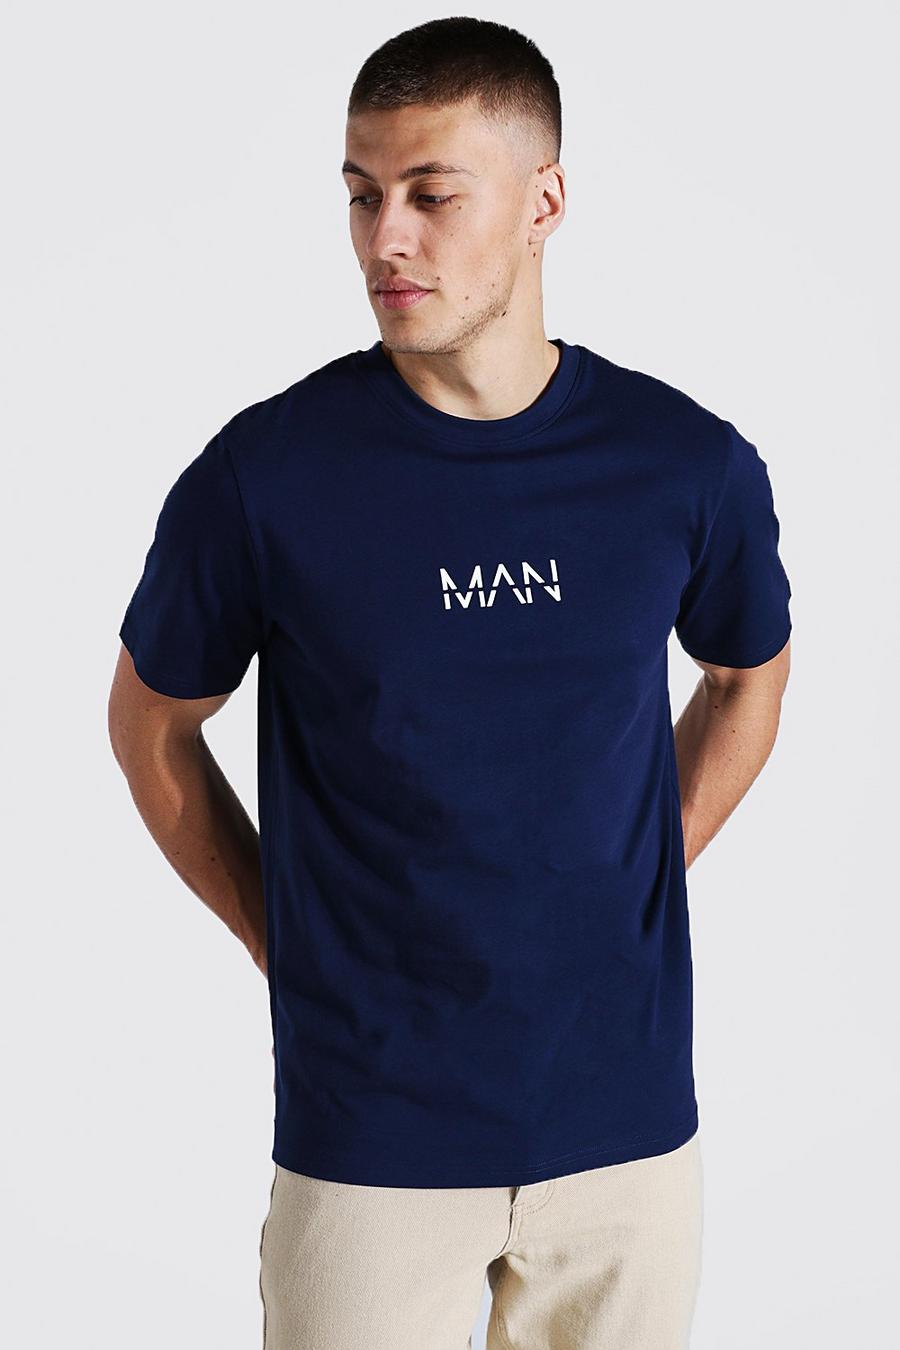 Camiseta MAN Original, Navy image number 1